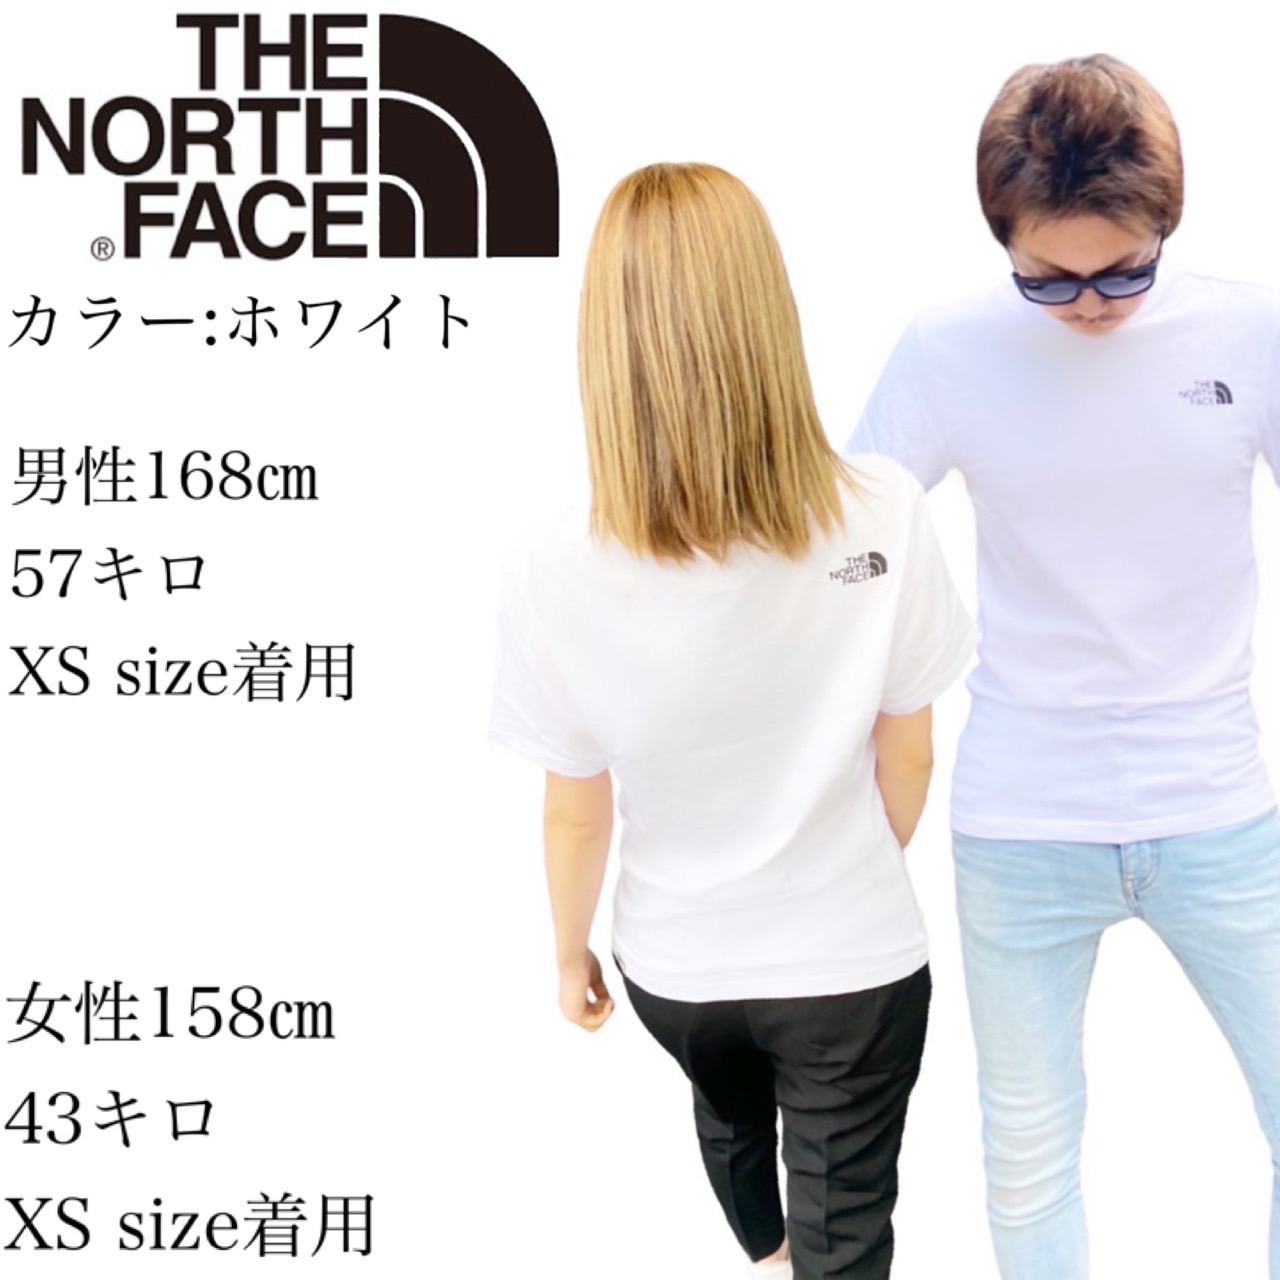 ザ ノースフェイス The North Face Tシャツ シンプルドーム 半袖 NF0A2TX5 カットソー メンズ レディース ロゴ  THE NORTH FACE S/S SIMPLE DOME TEE STY1 